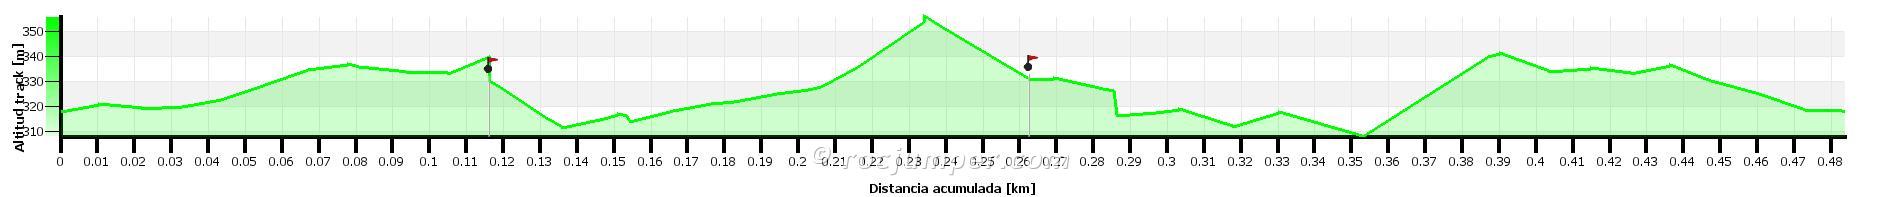 Altimetría - Vía Ferrata Montderes + Balma de Montderes - RocJumper